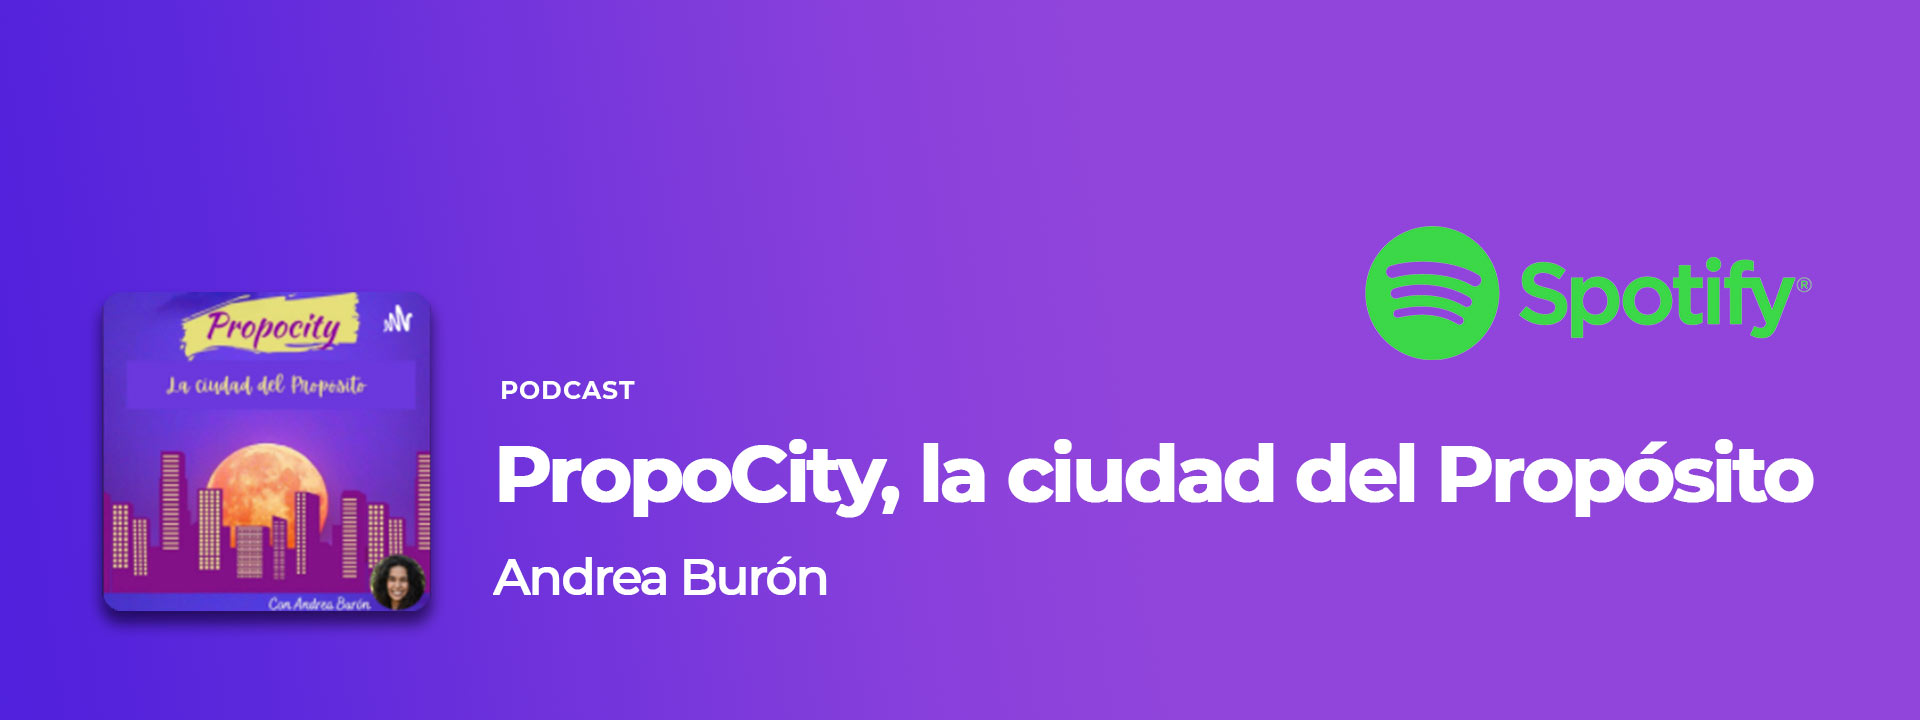 Proposito de vida podcast Andrea Burón